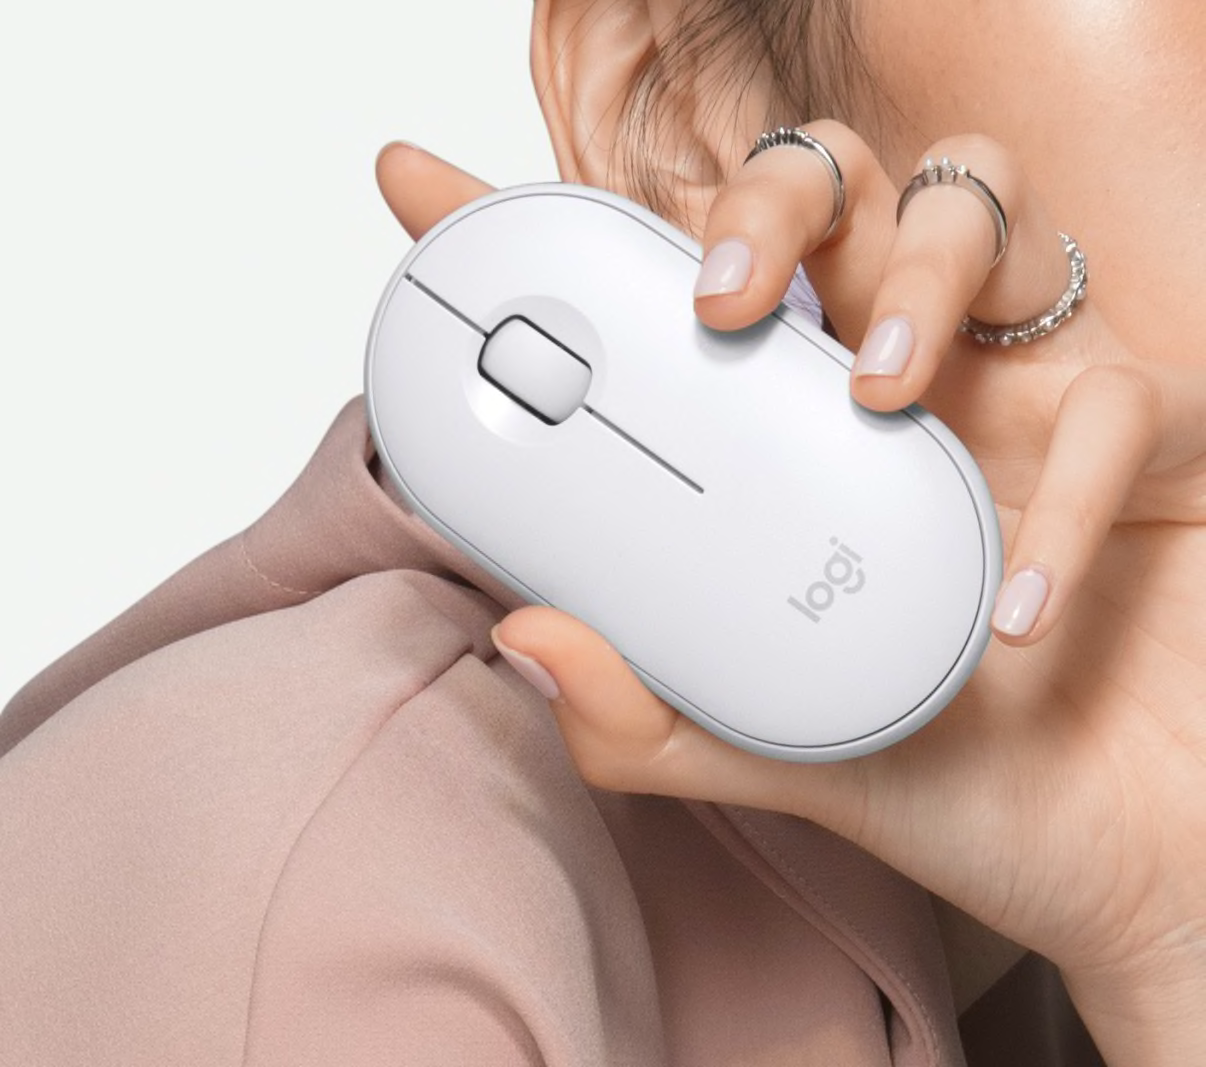 Persona sosteniendo un ratón blanco de ordenador